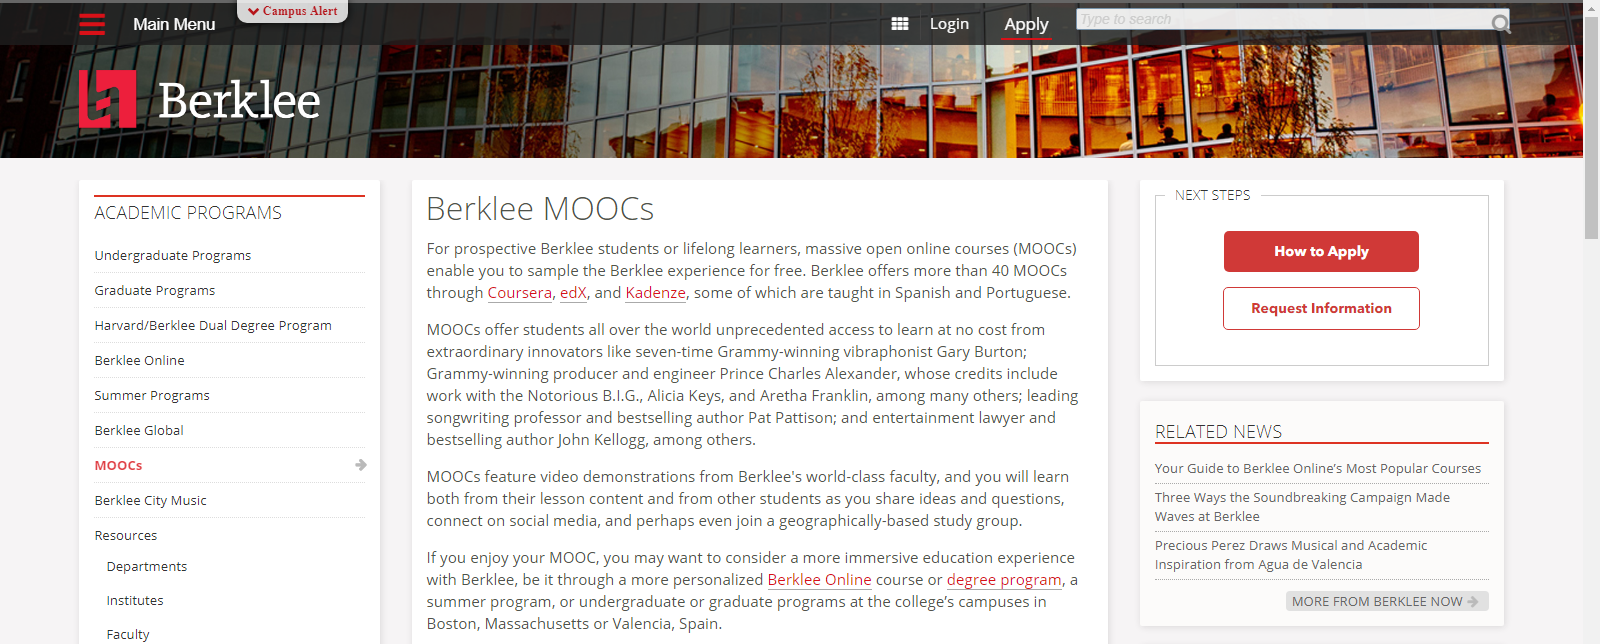 MOOCS Music Courses